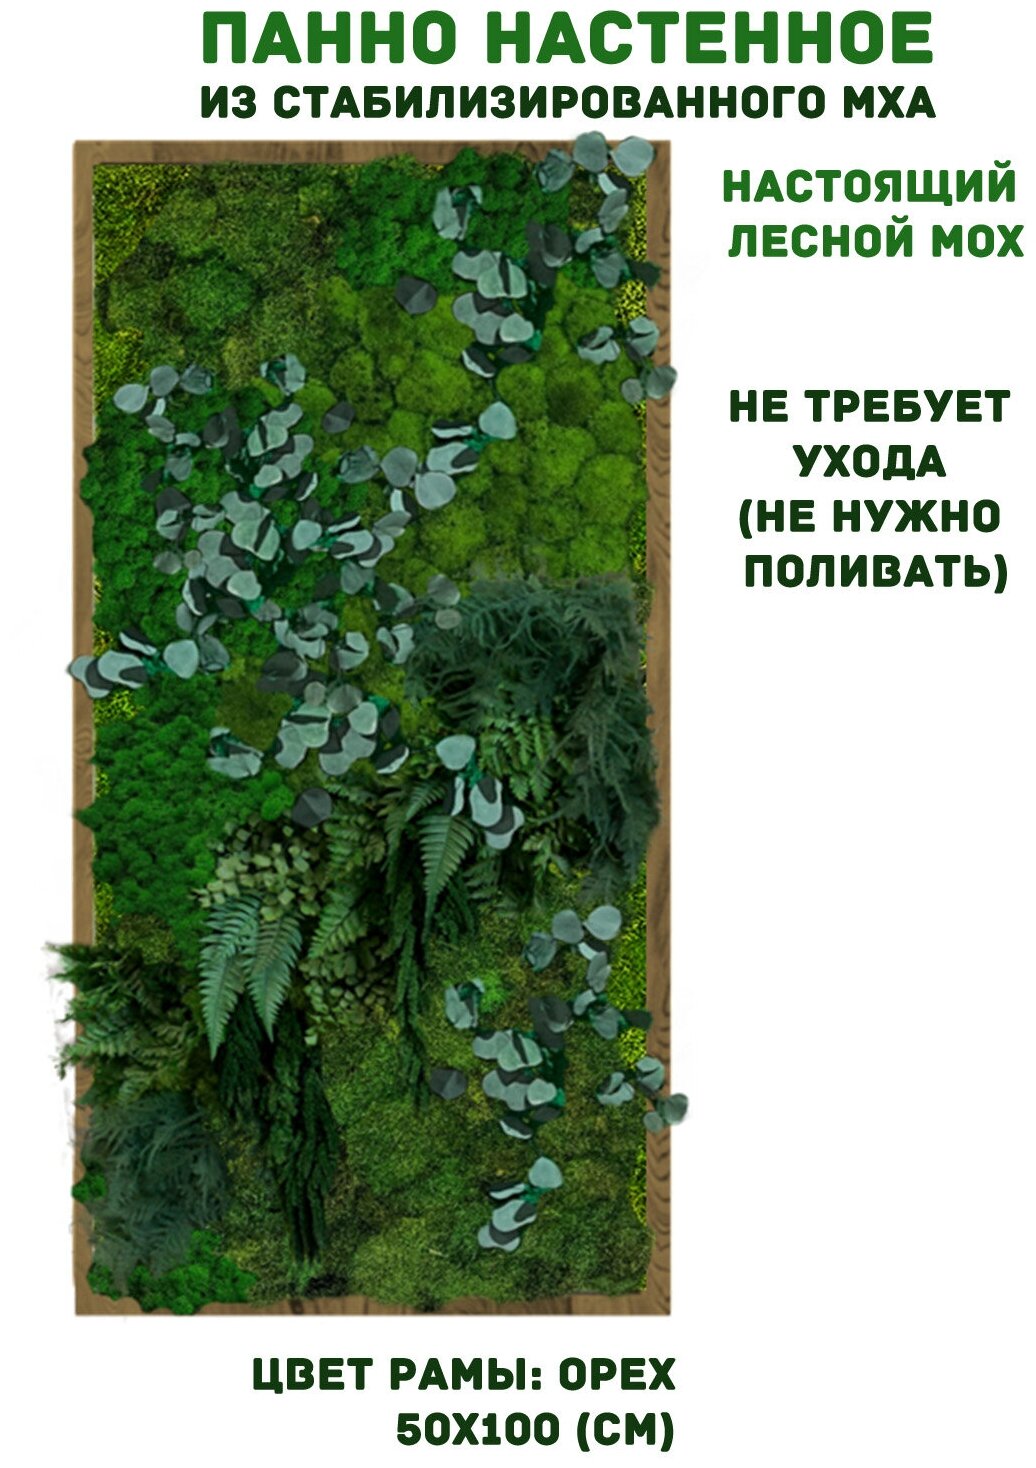 Панно из стабилизированно мха GardenGo в рамке цвета орех, 50х100 см, цвет мха зеленый